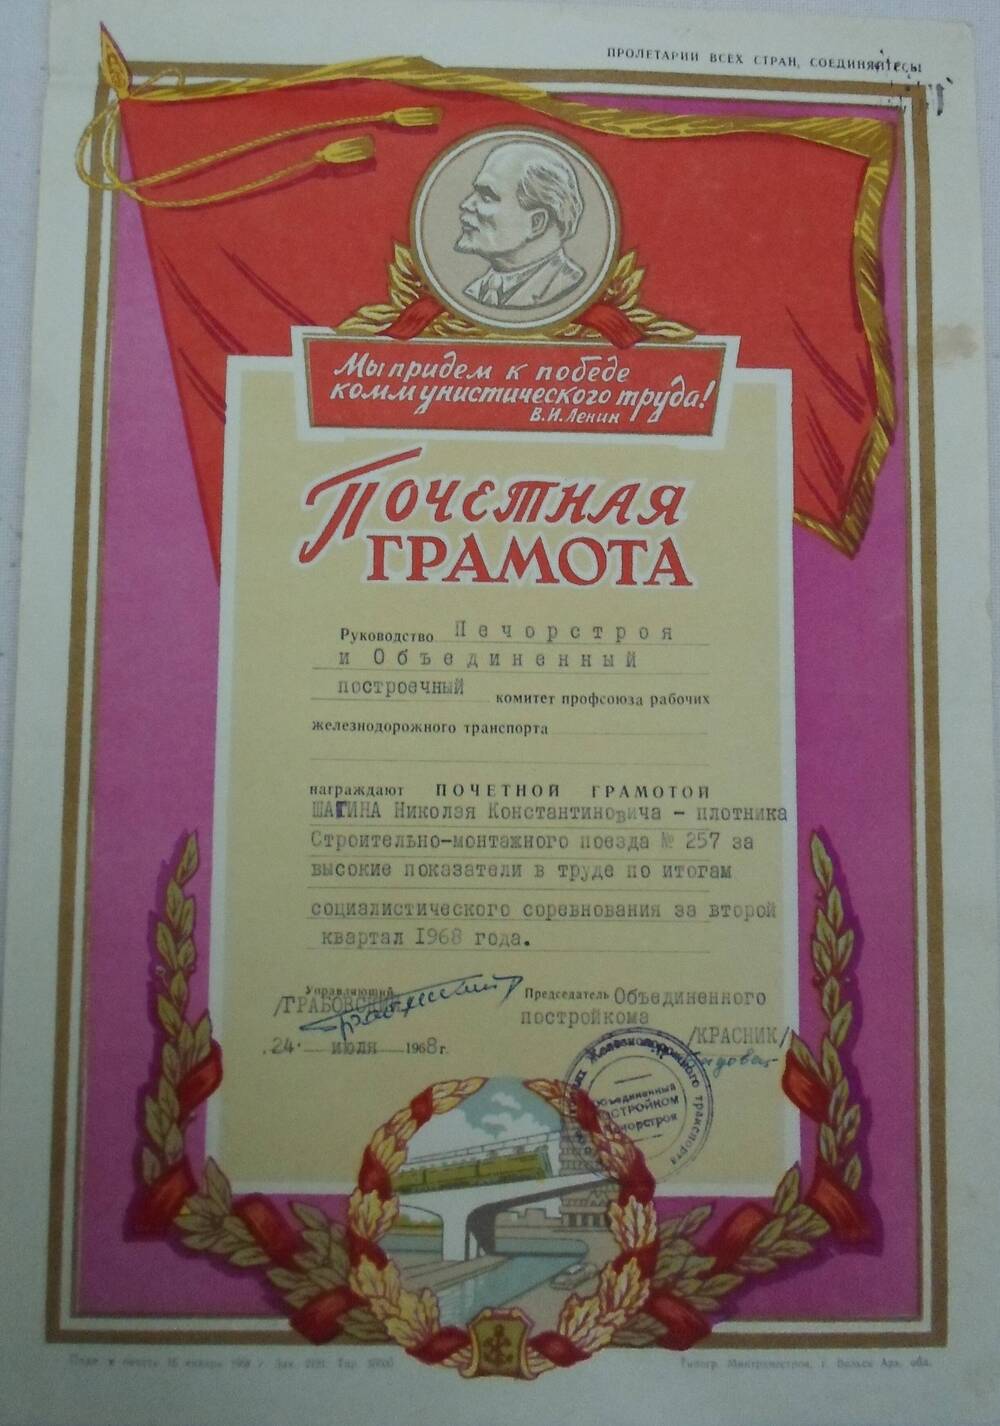 Почетная грамота Шагина Николая Константиновича- плотник СМП-259 Печорстроя награжден за высокие показатели в труде по итогам социалистического соревнования за второй квартал 1968 года.